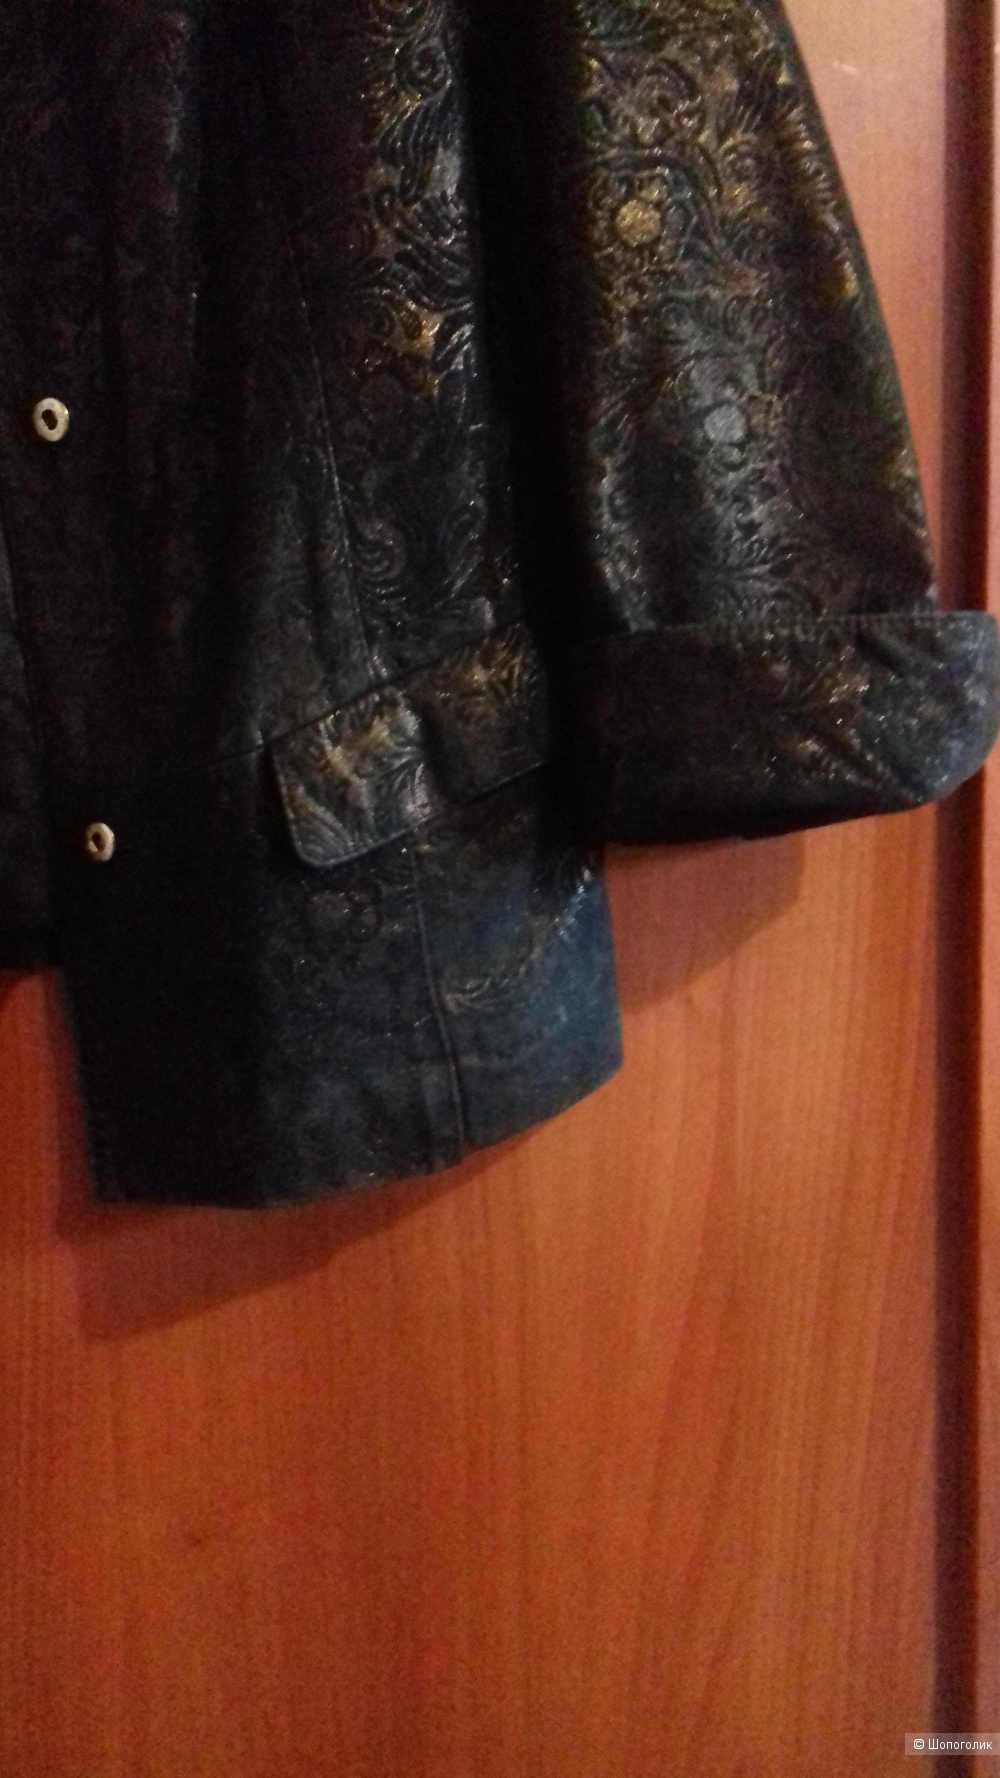 Куртка - пиджак Paolo Santini. Италия. р. Xl ( по факту 46).